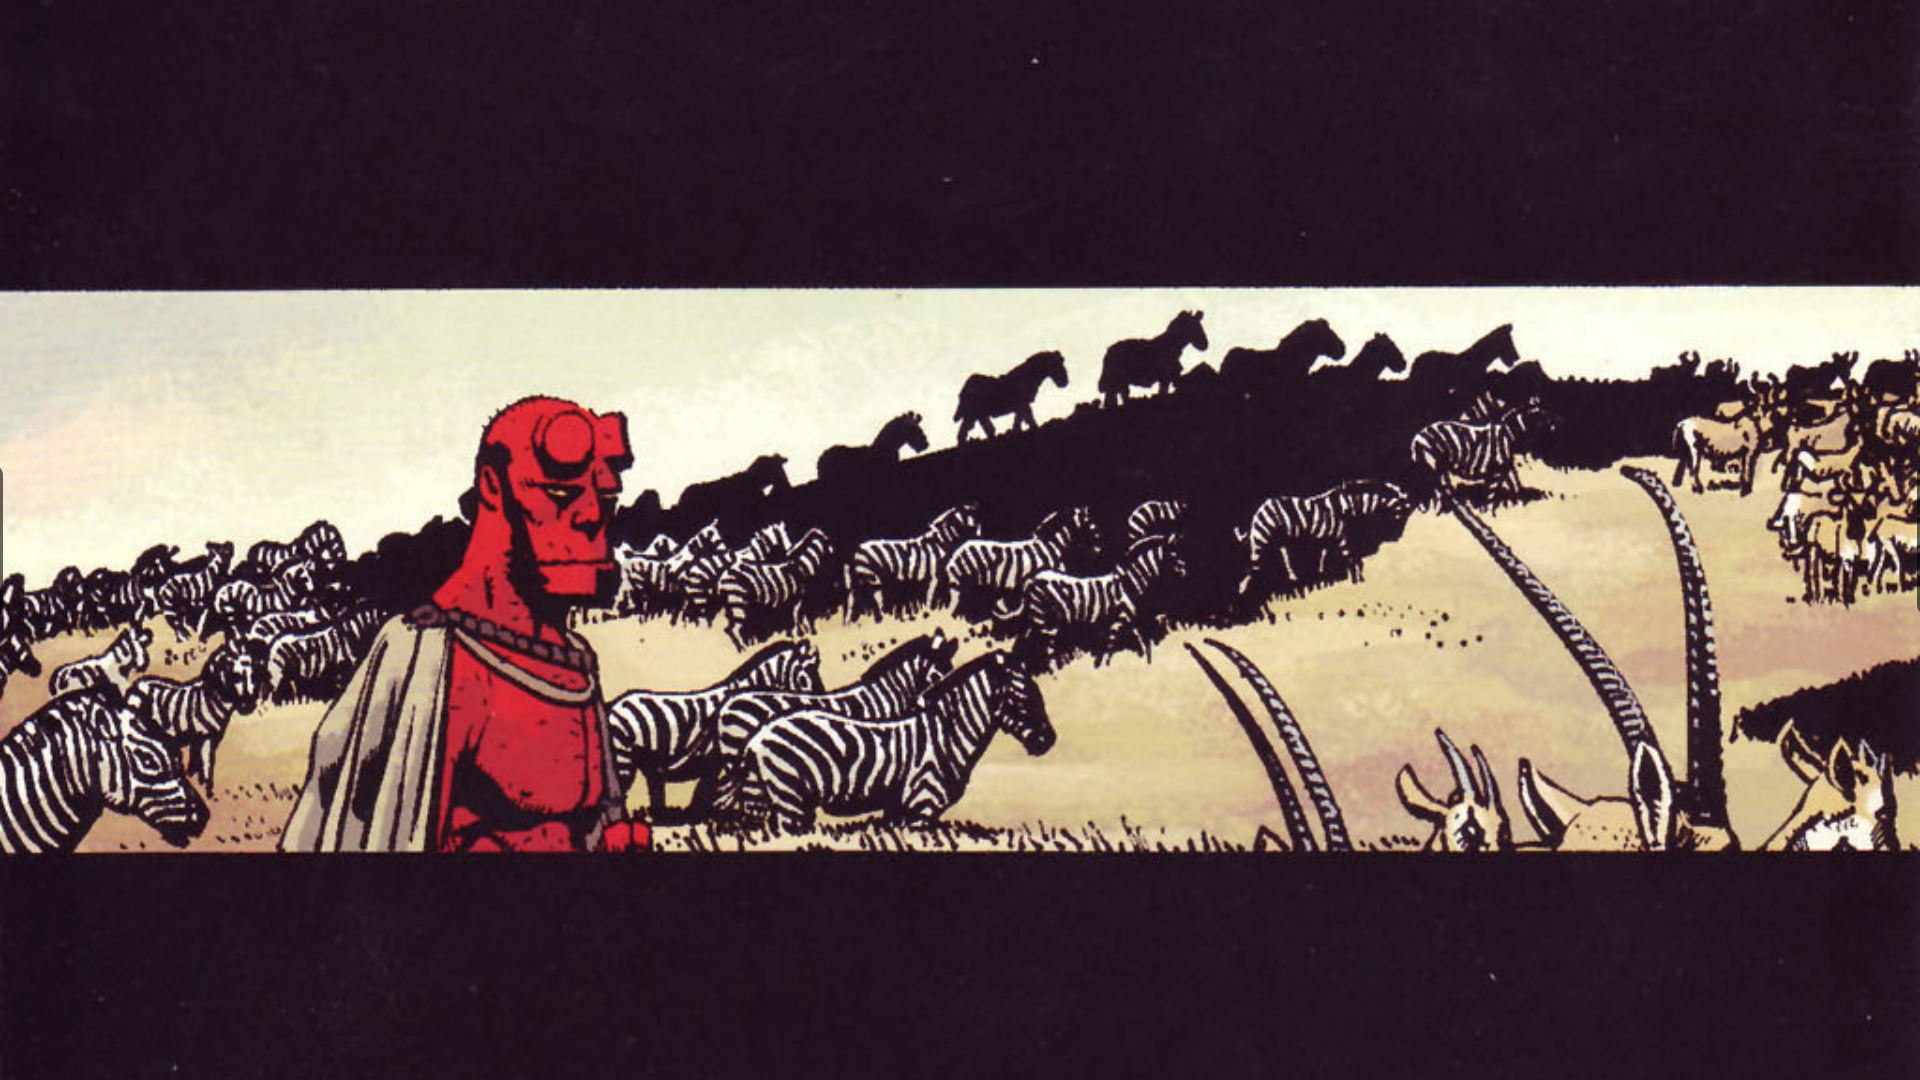 General 1920x1080 comic art comics Hellboy zebras animals